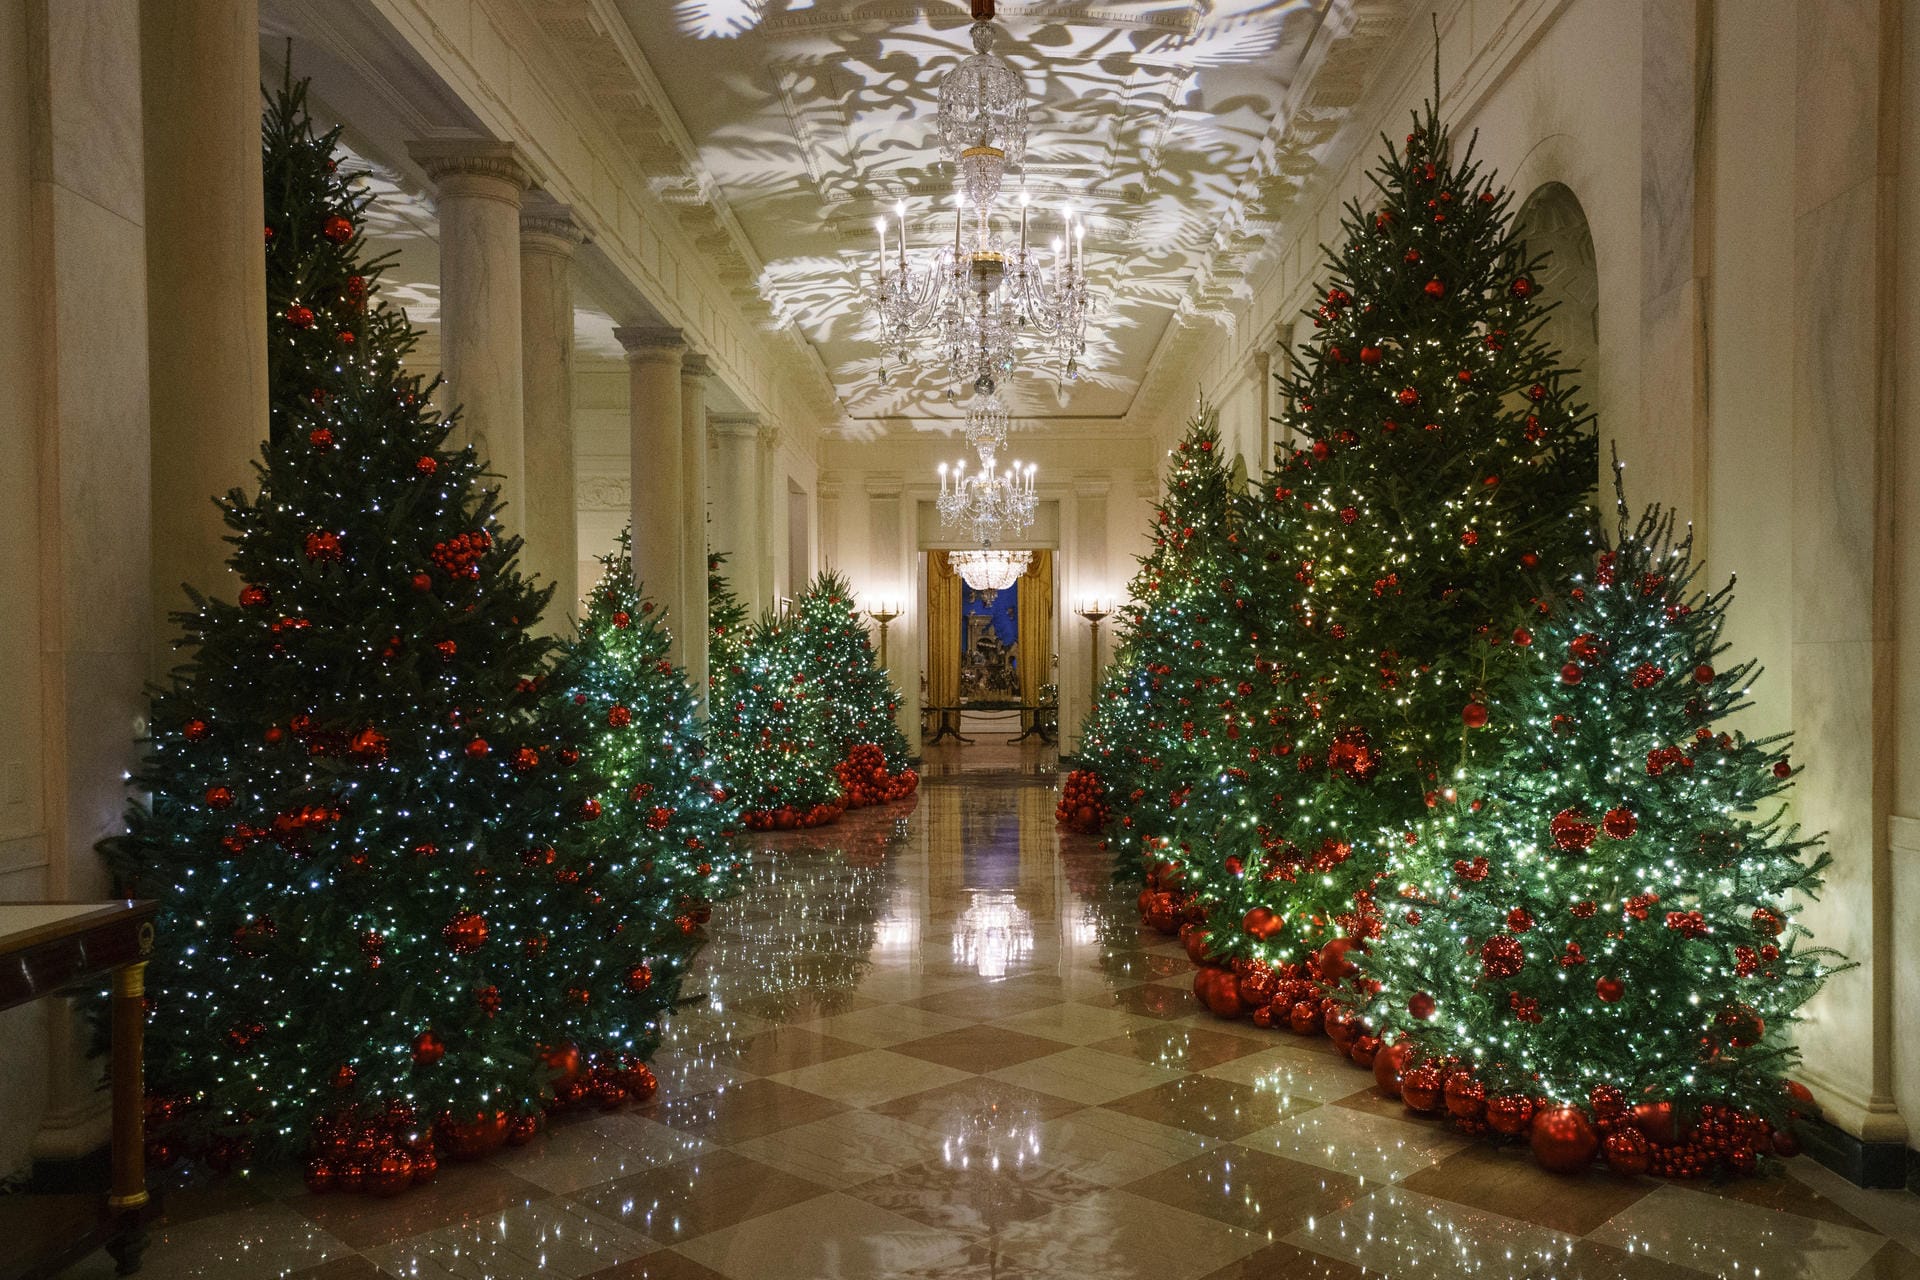 Weihnachtsbäume in der Eingangshalle des Weißen Hauses: Insgesamt 29 Bäume zieren das Weiße Haus während der Weihnachtszeit.